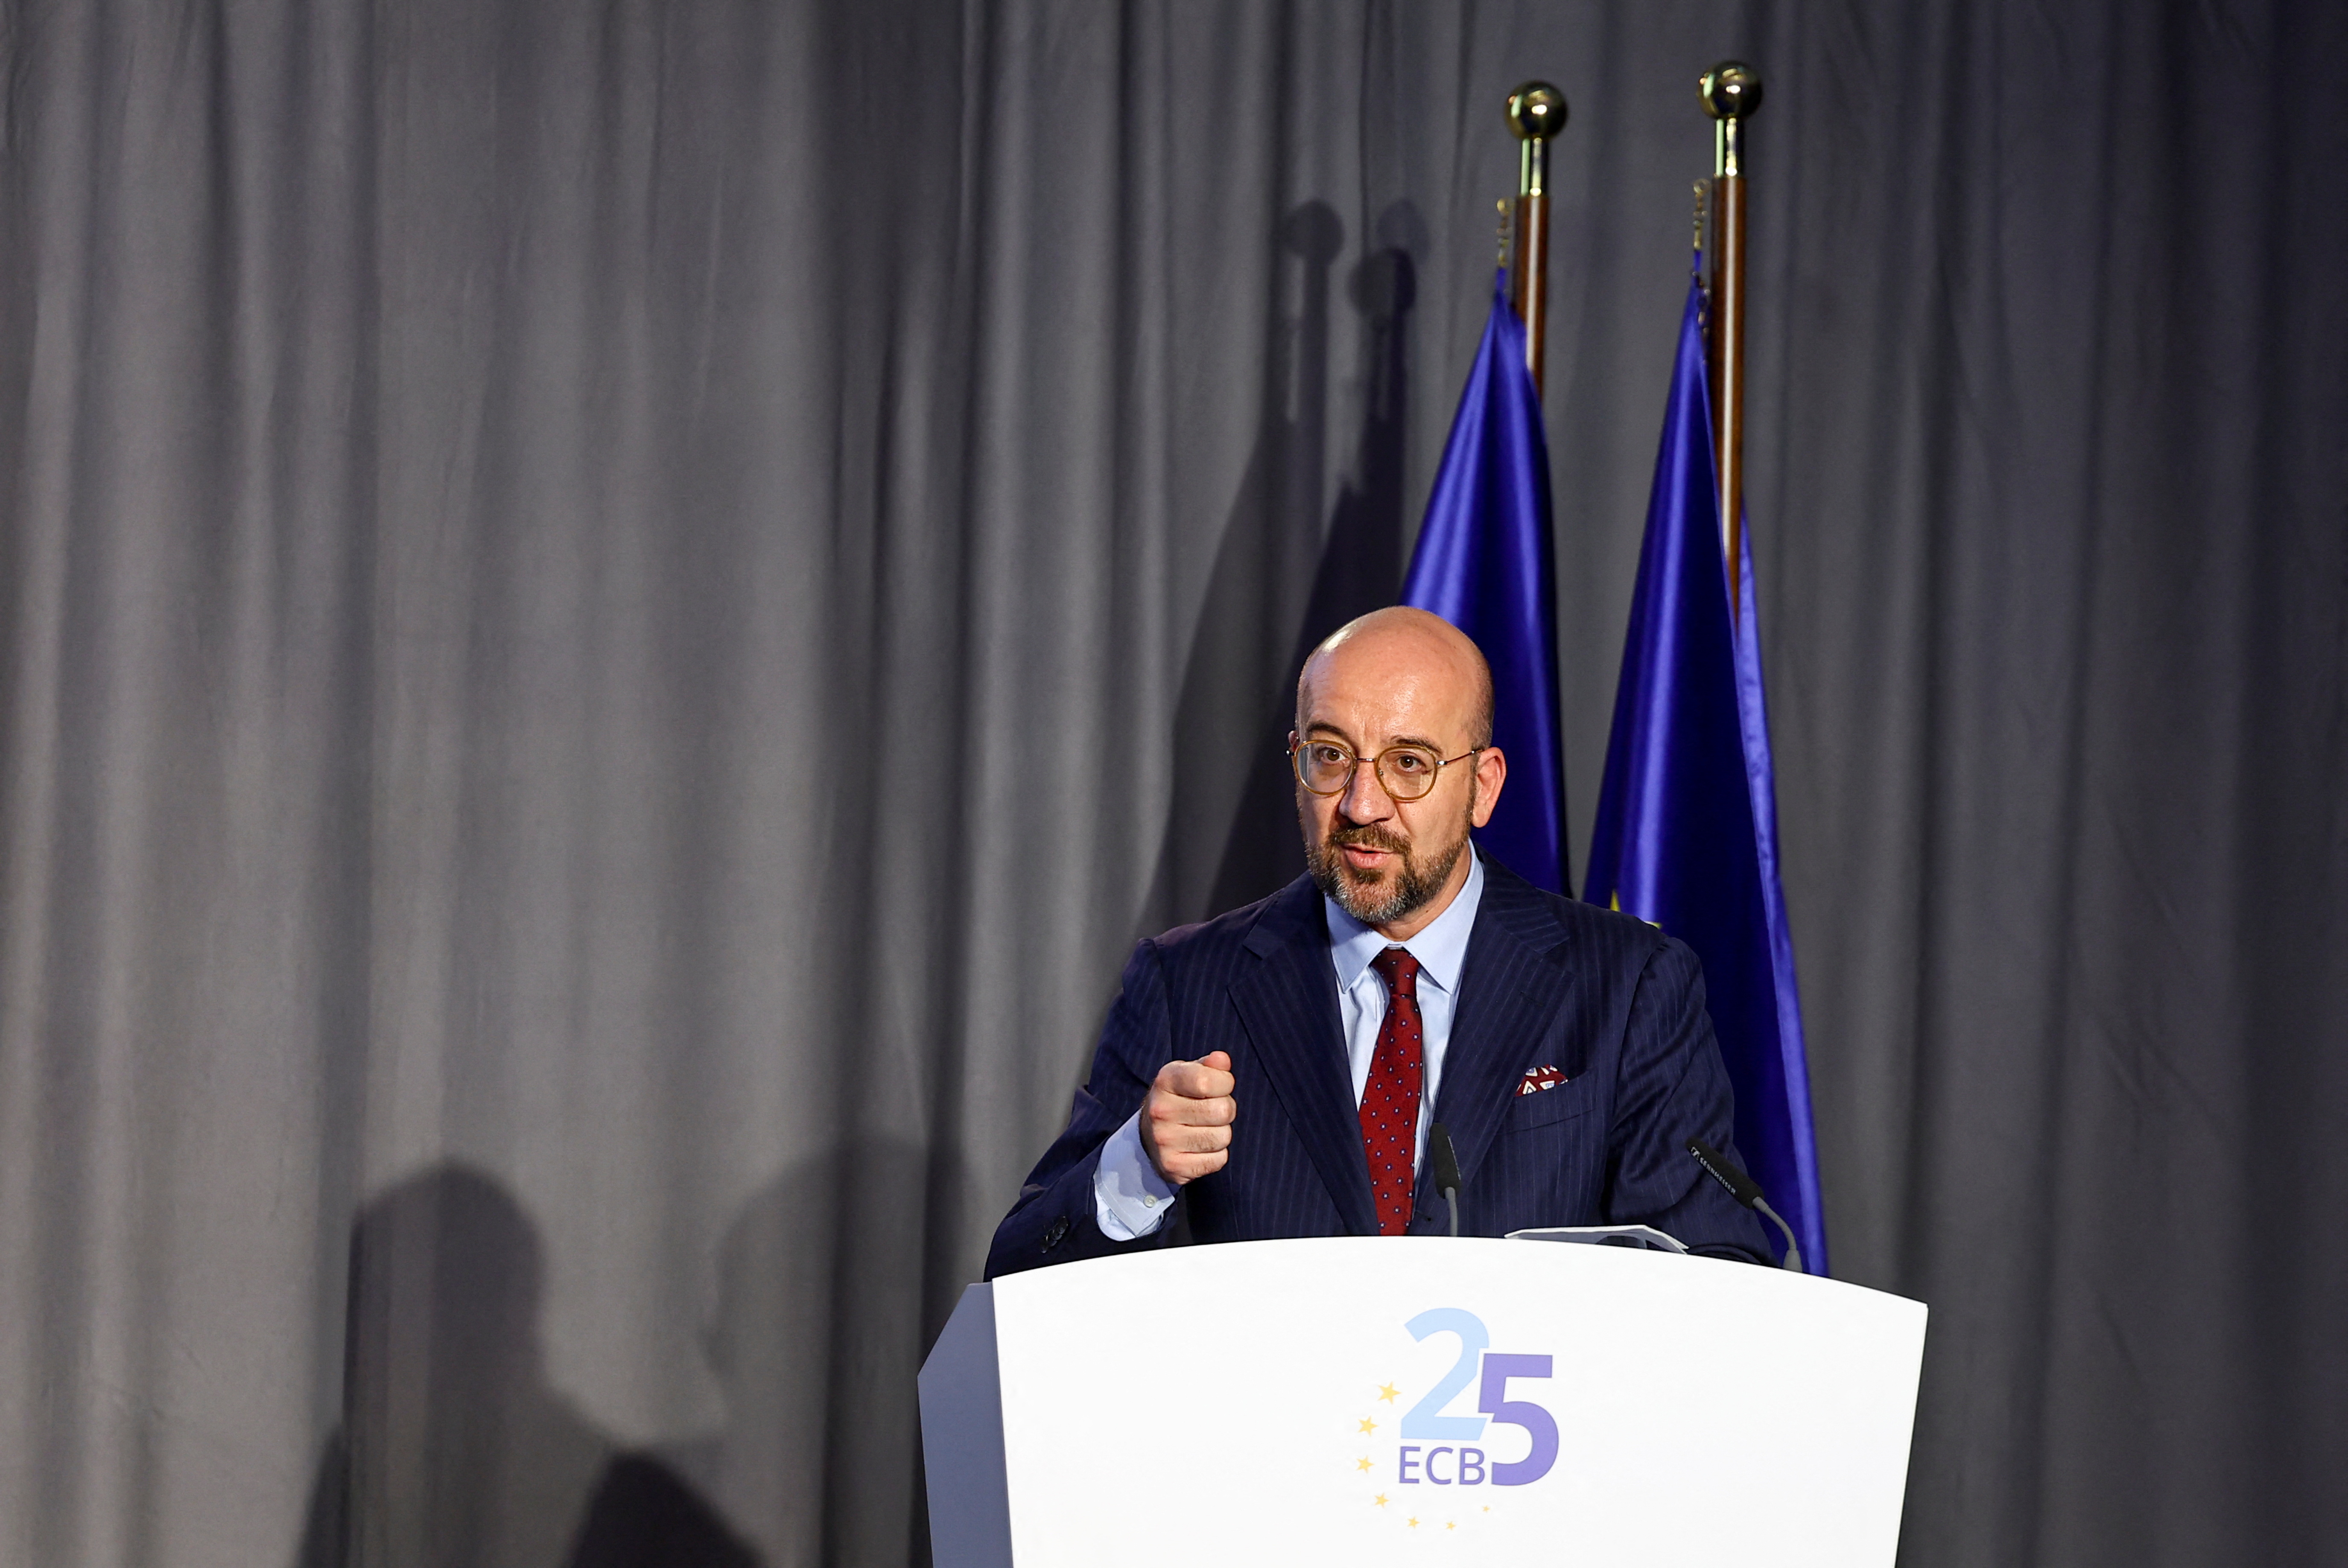 El presidente del Consejo Europeo, Charles Michel, pronuncia un discurso durante una ceremonia para celebrar el 25 aniversario del BCE, en Frankfurt, Alemania, el 24 de mayo de 2023. REUTERS/Kai Pfaffenbach/Pool